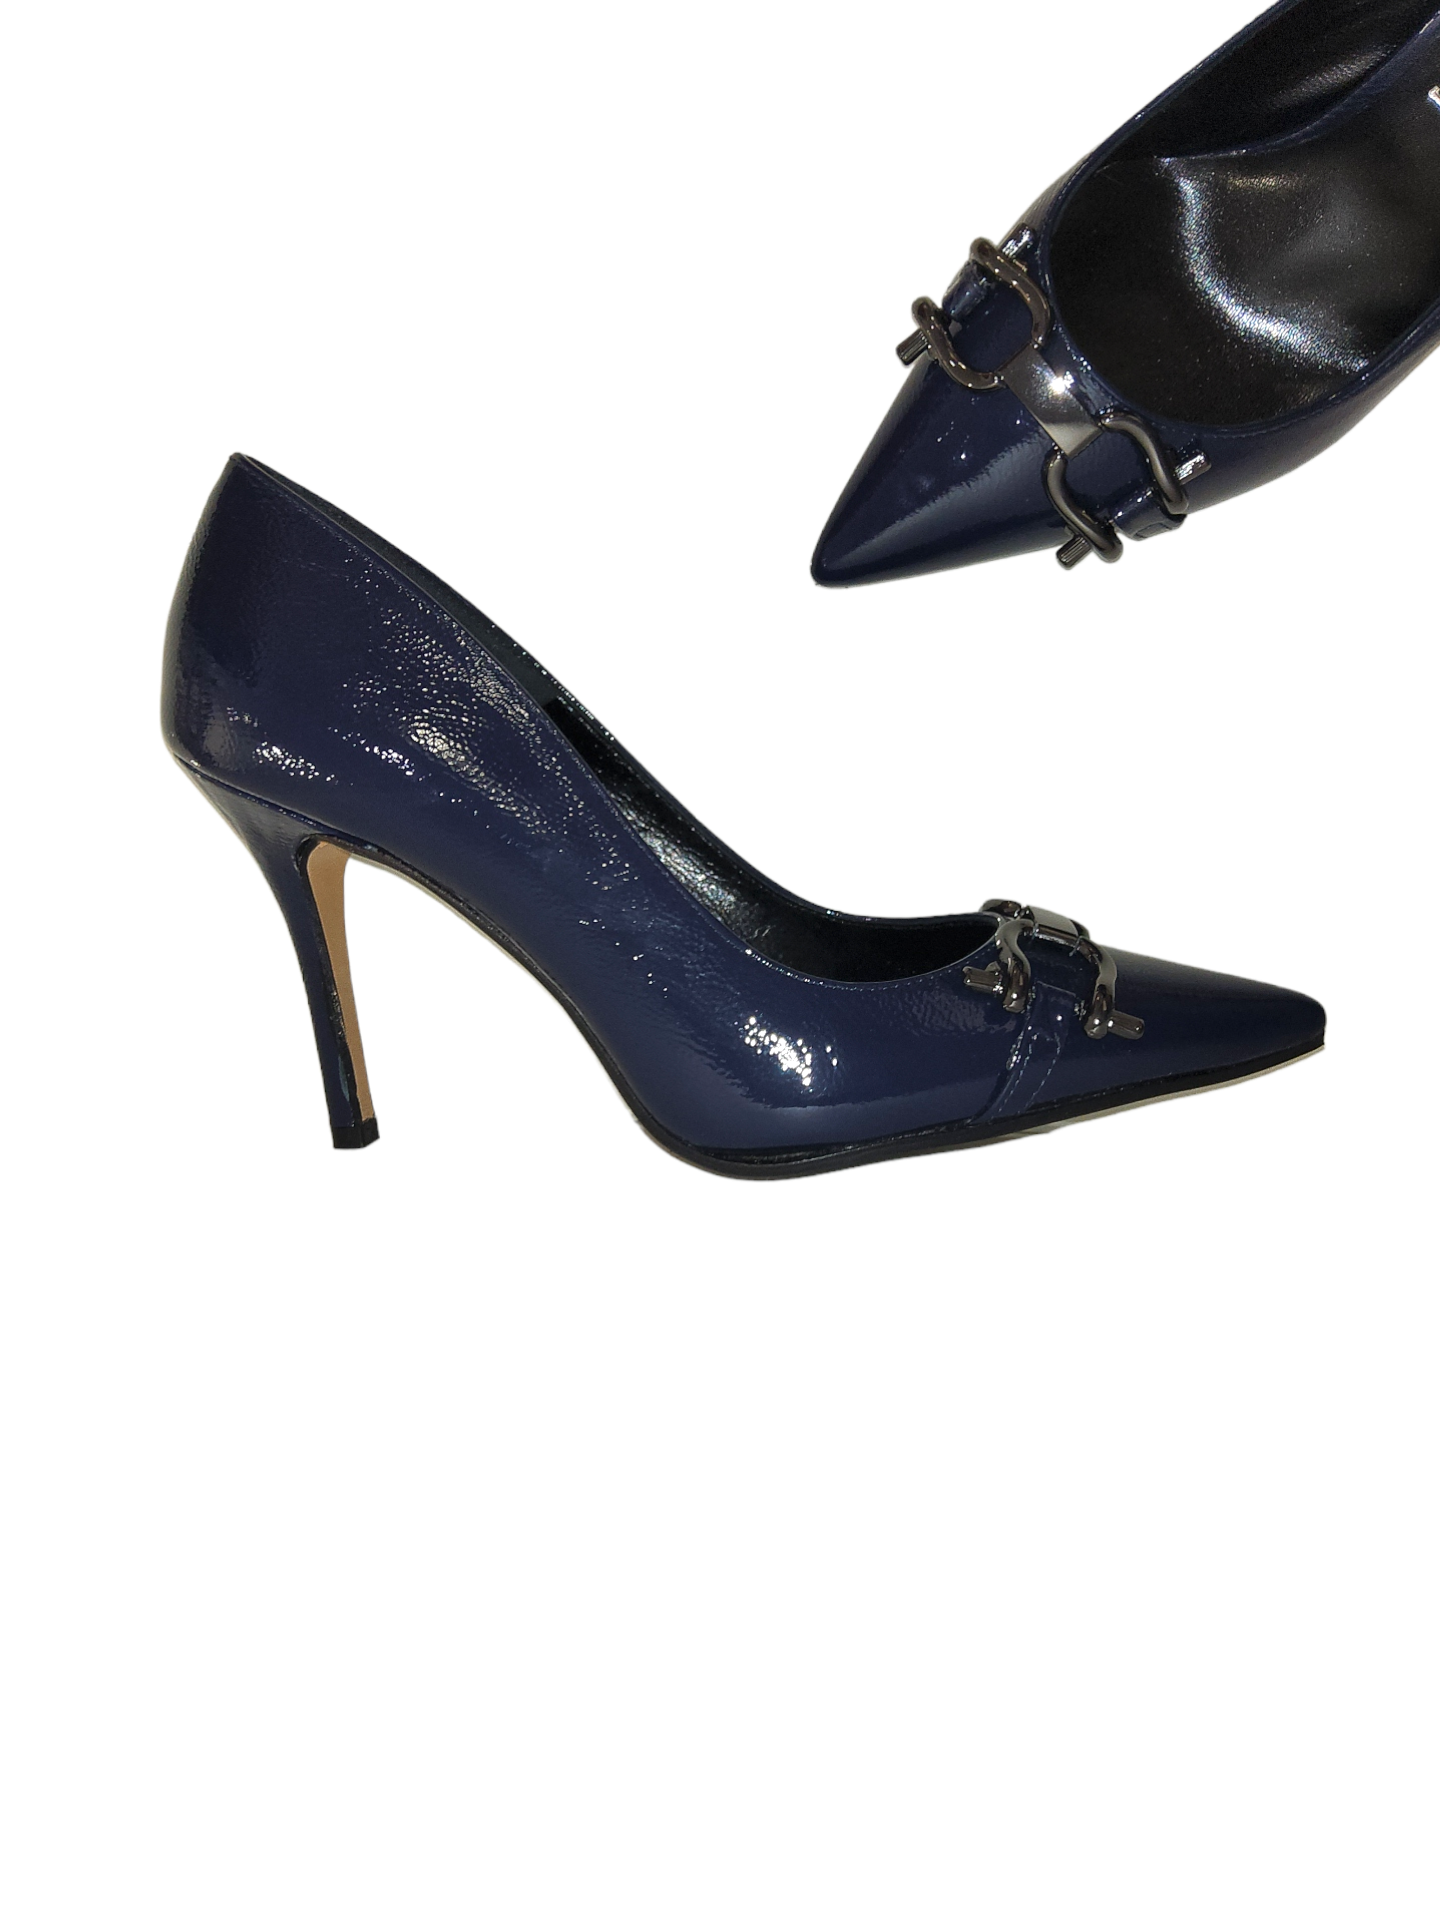 Blue court shoe